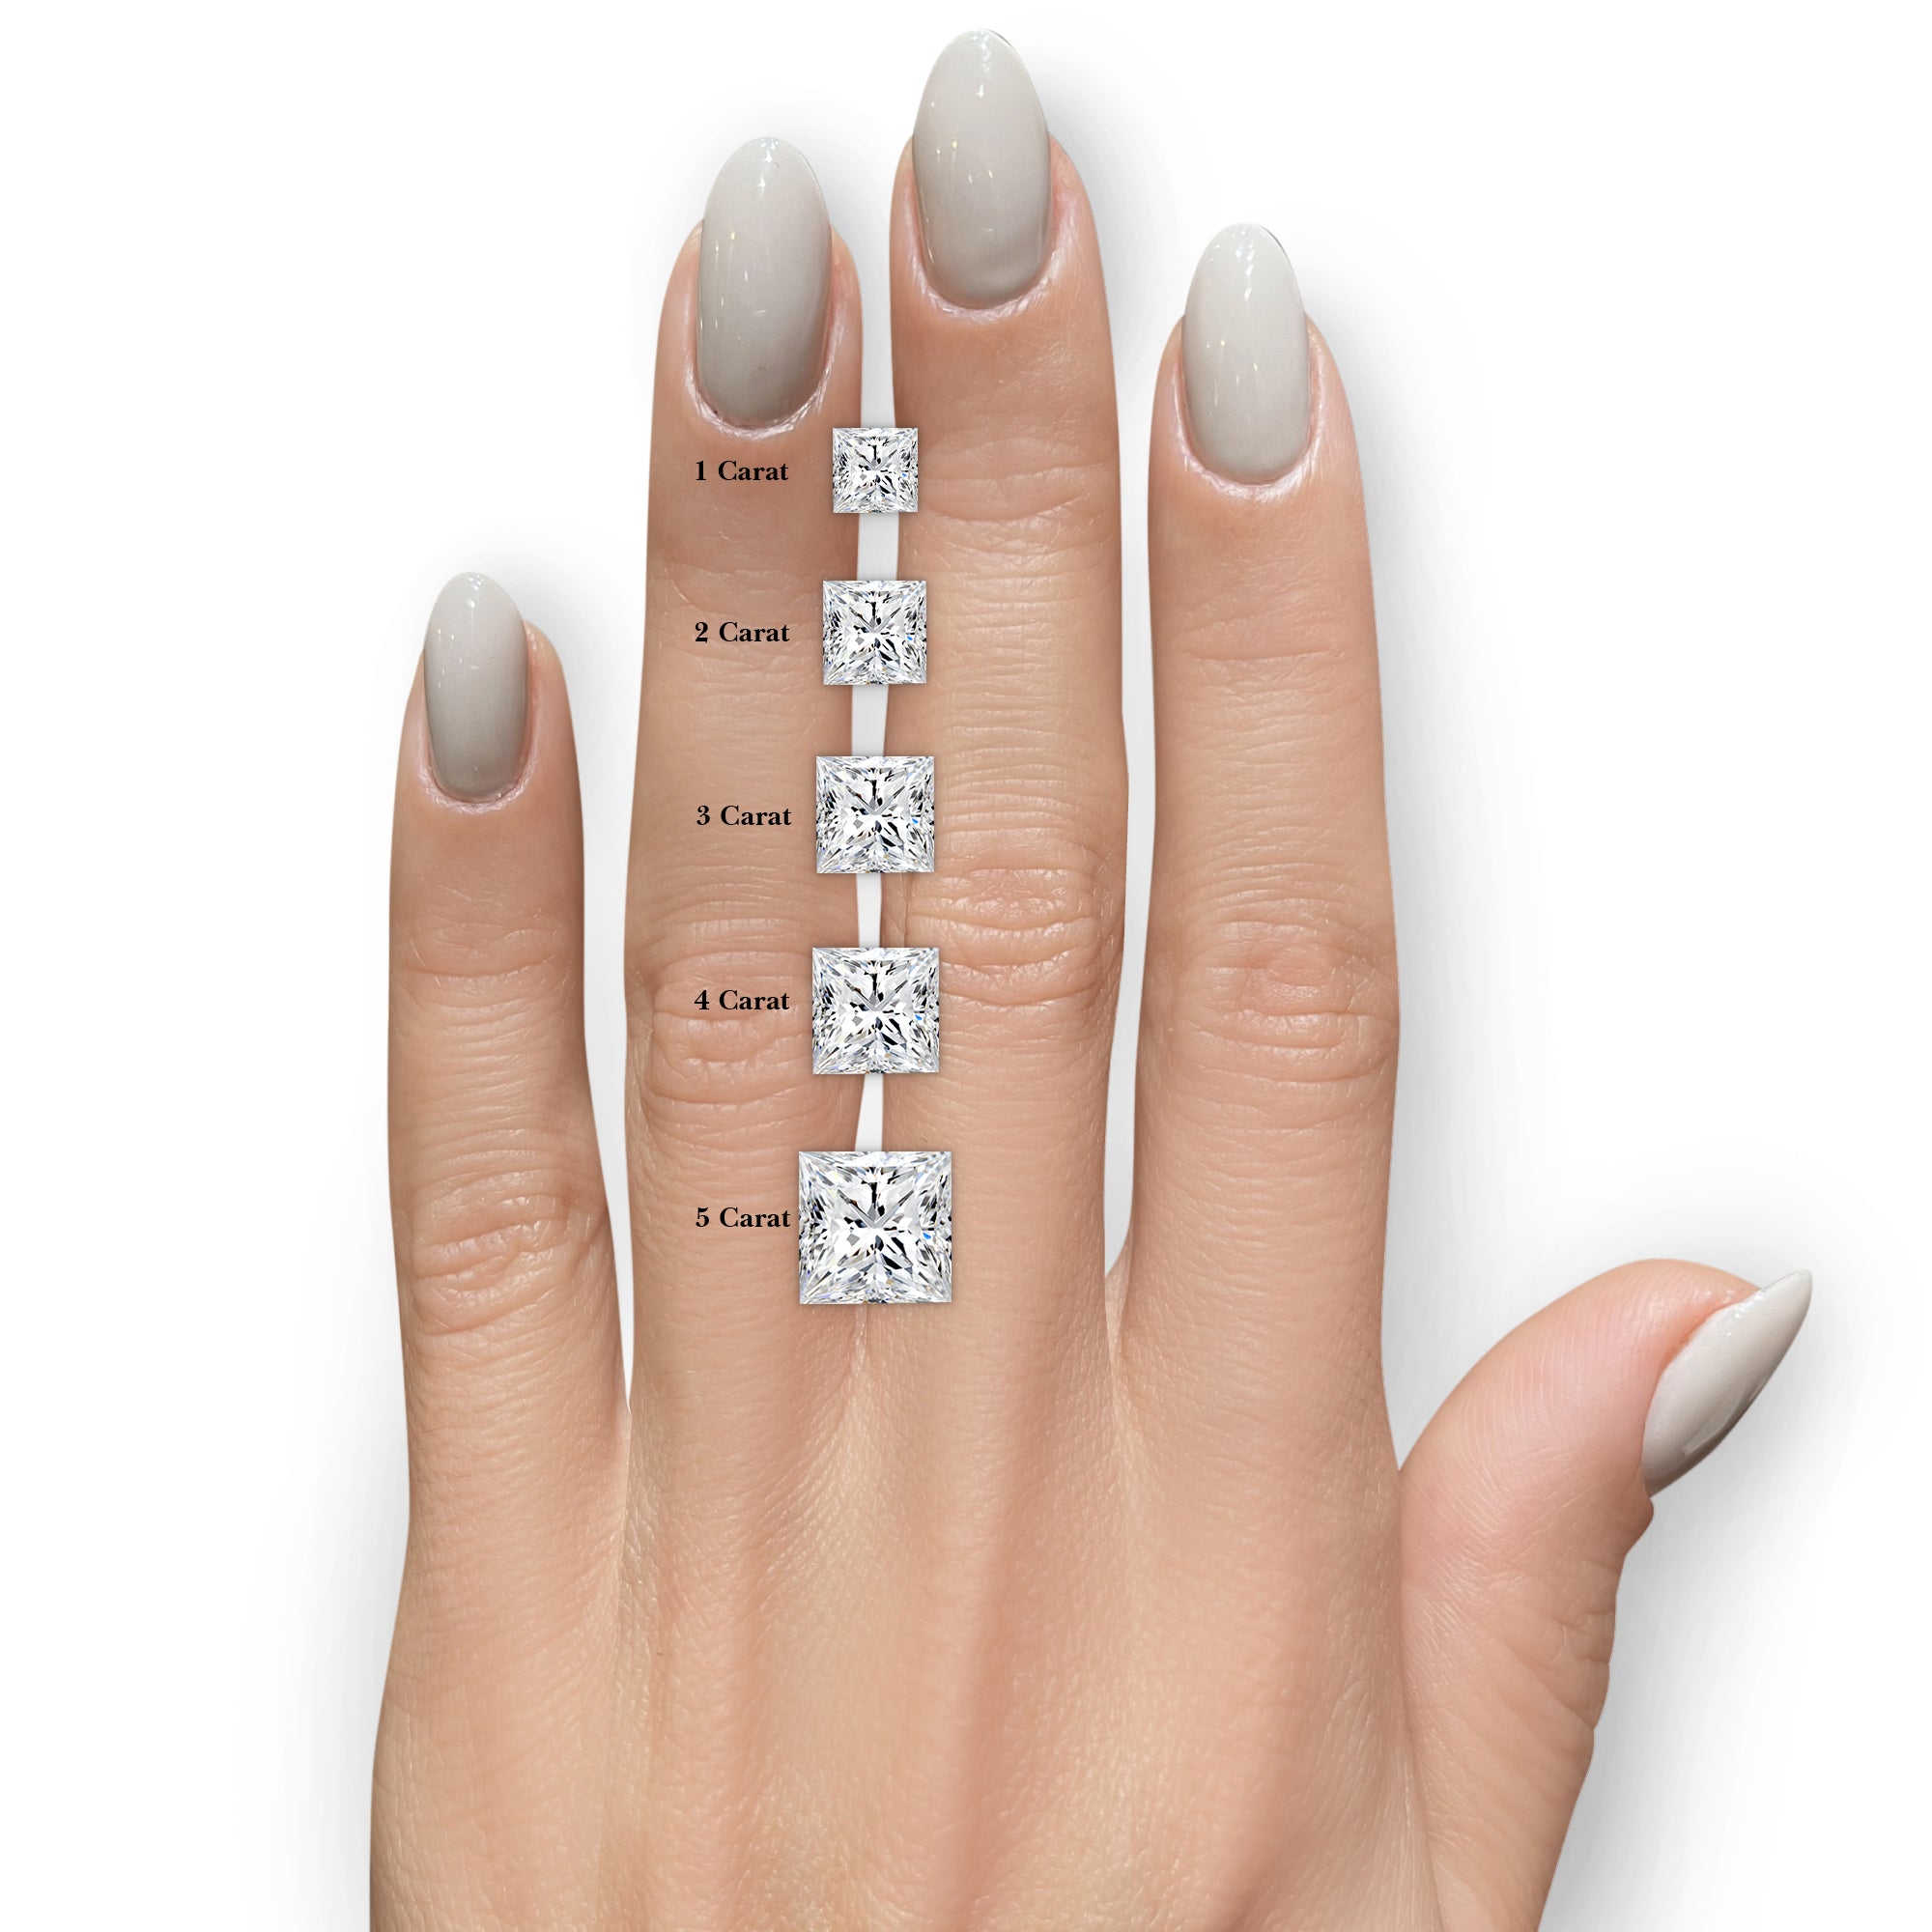 Isabelle Diamond Engagement Ring -14K White Gold